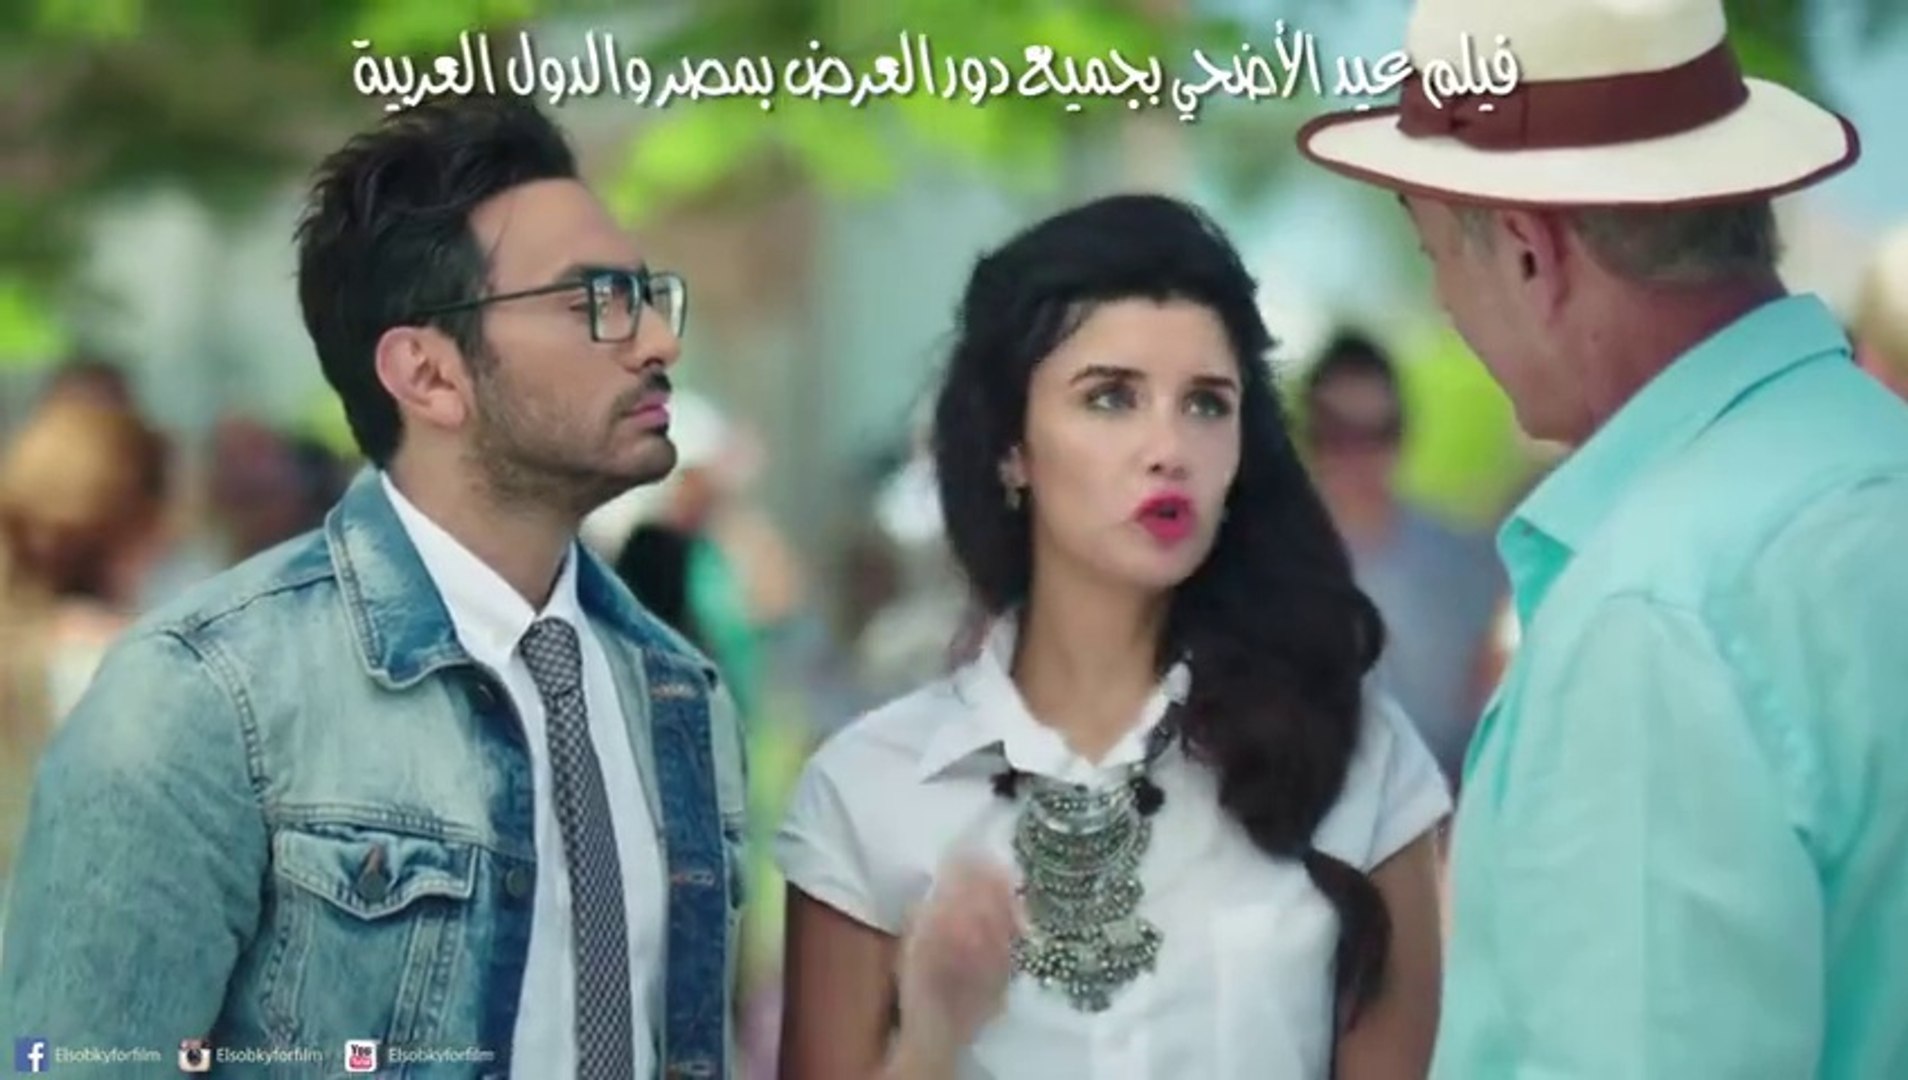 اعلان فيلم اهواك - تامر حسنى وغادة عادل - فيلم عيد الاضحى 2015 - فيديو  Dailymotion